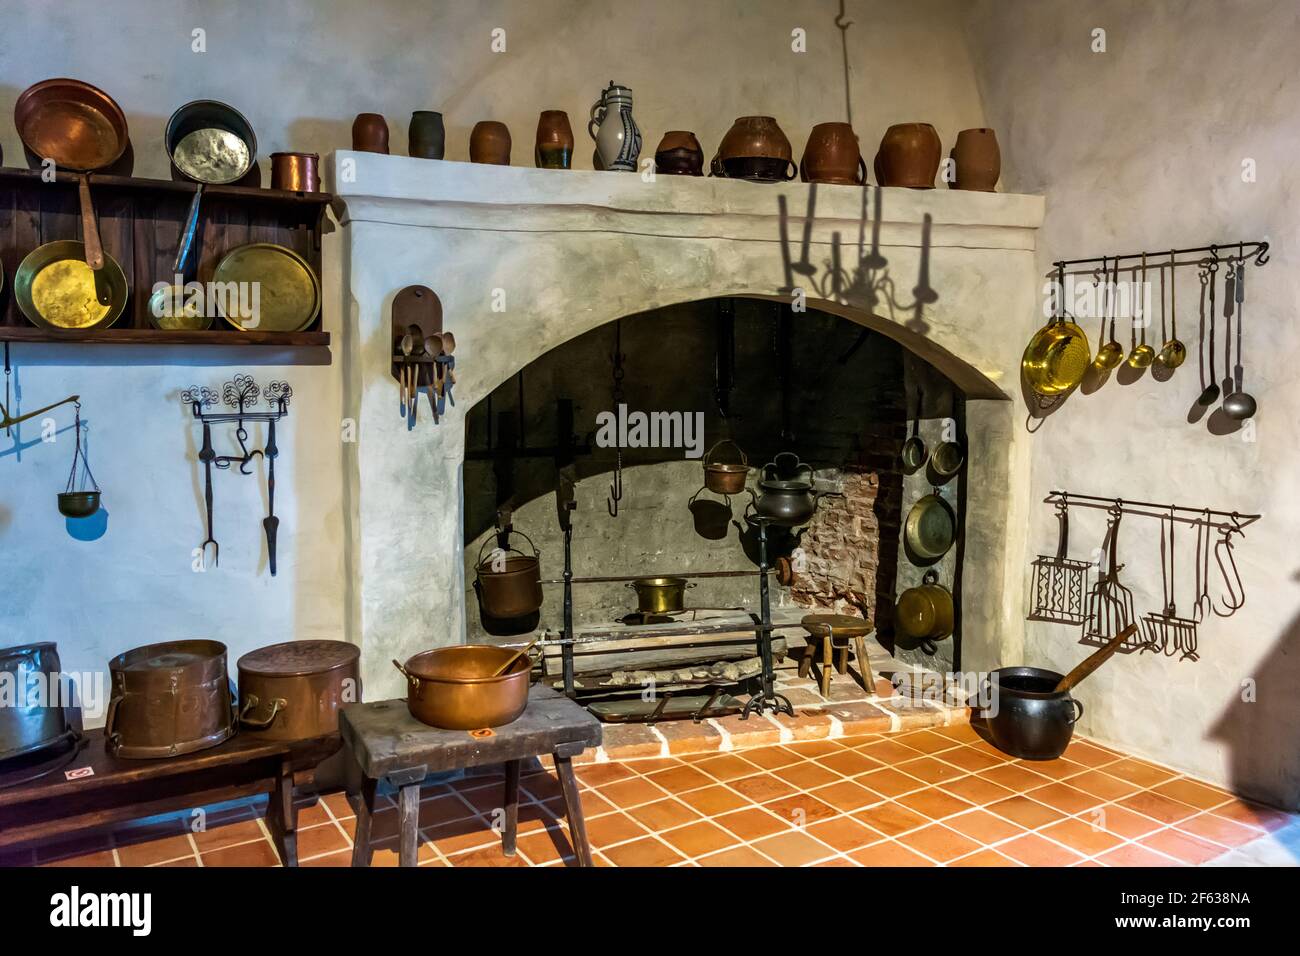 Interiores del Castillo de Bauska - cocina con latón del siglo 16th-17th, hierro y equipos de cocina de madera Foto de stock